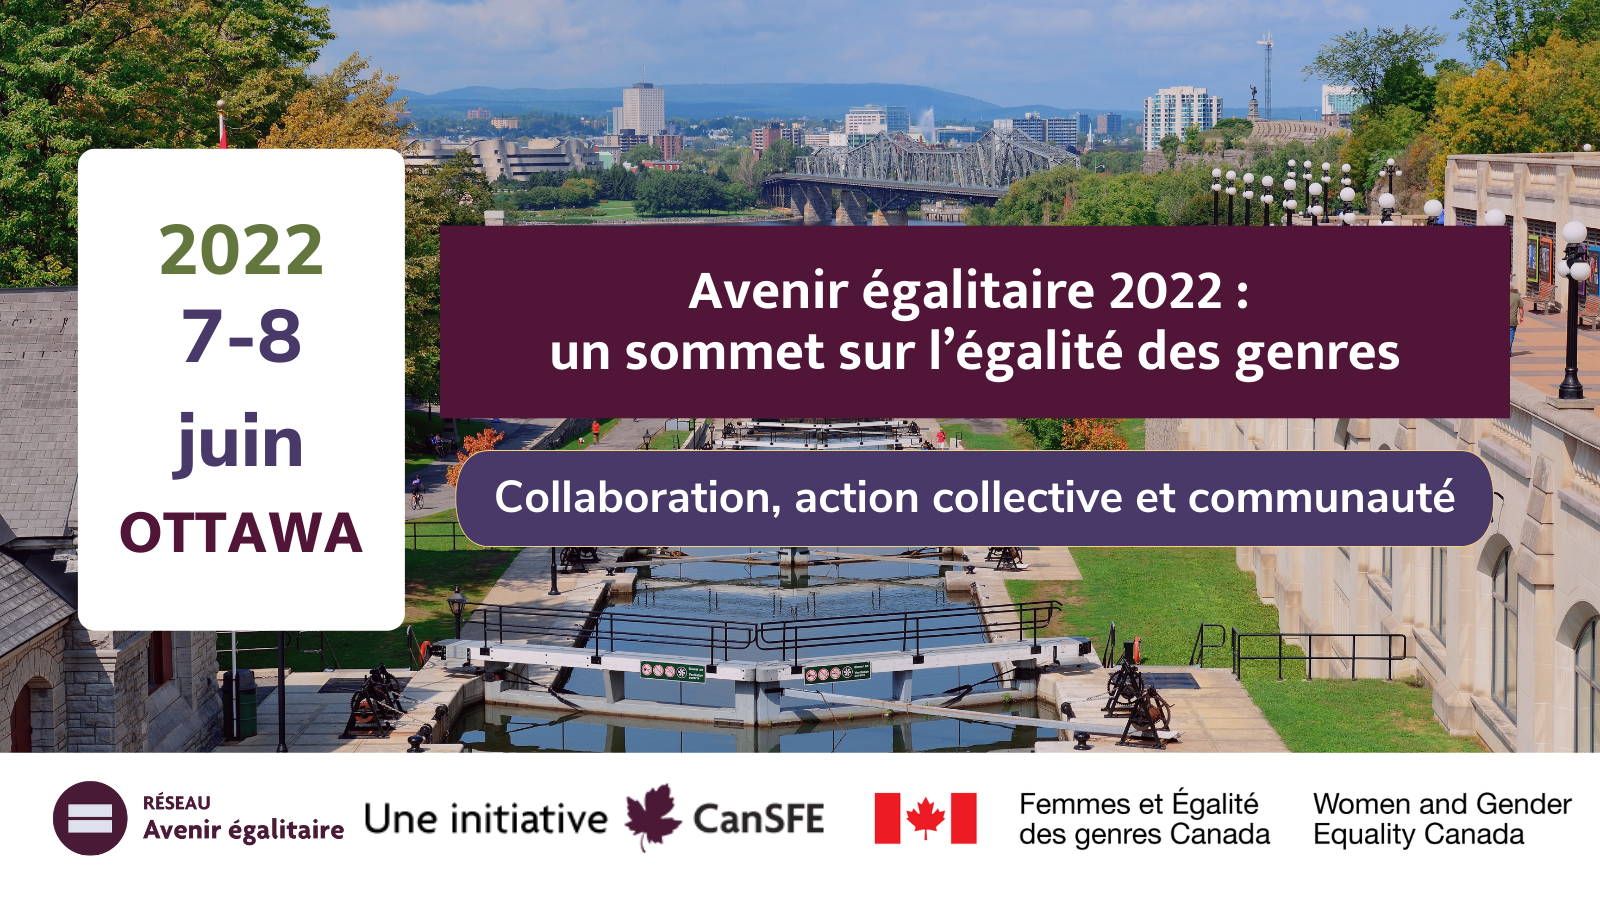 Le Sommet sur l’égalité des genres se tiendra à Ottawa en juin 2022